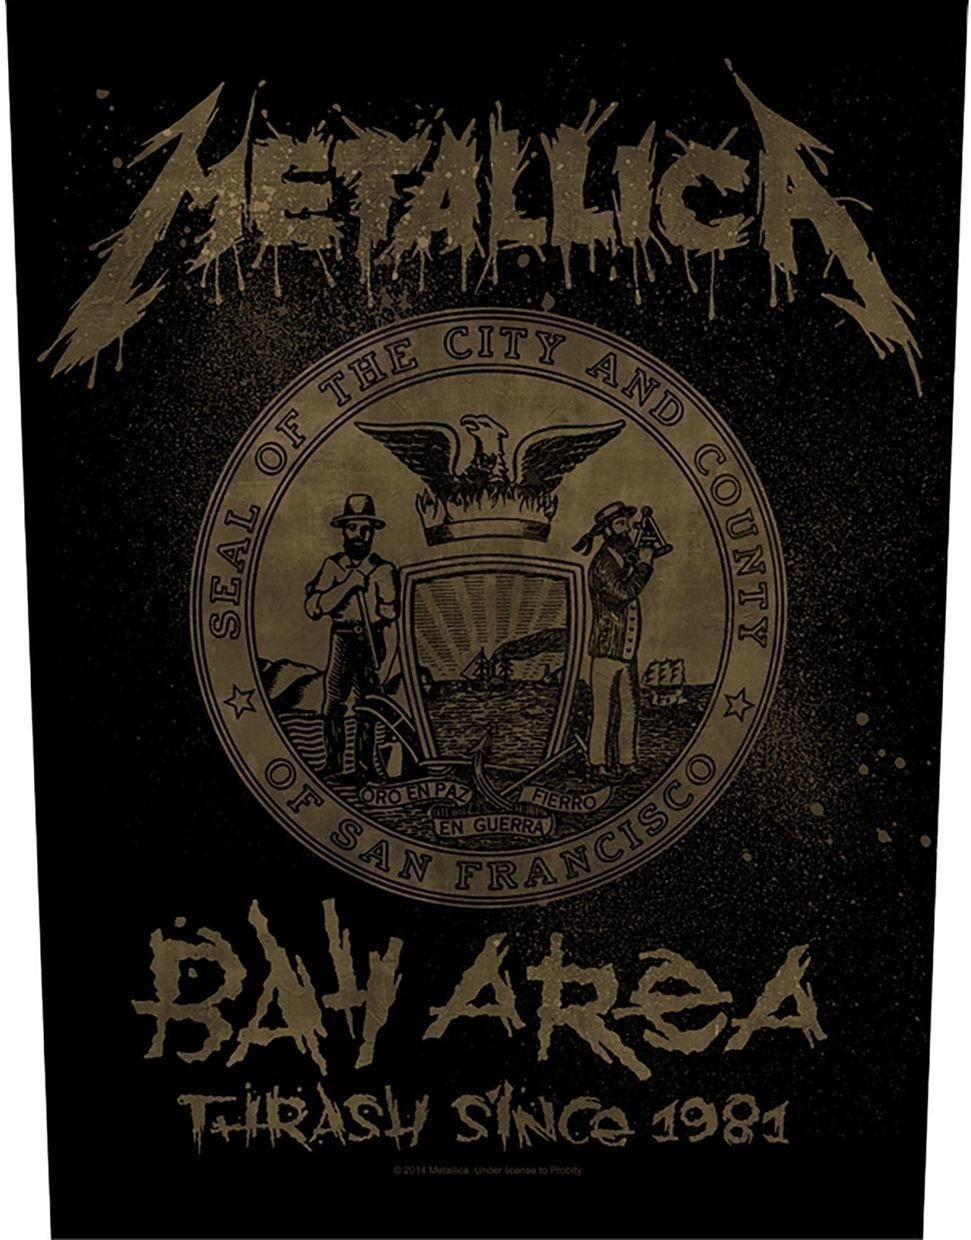 Zakrpa Metallica Bay Area Thrash Zakrpa